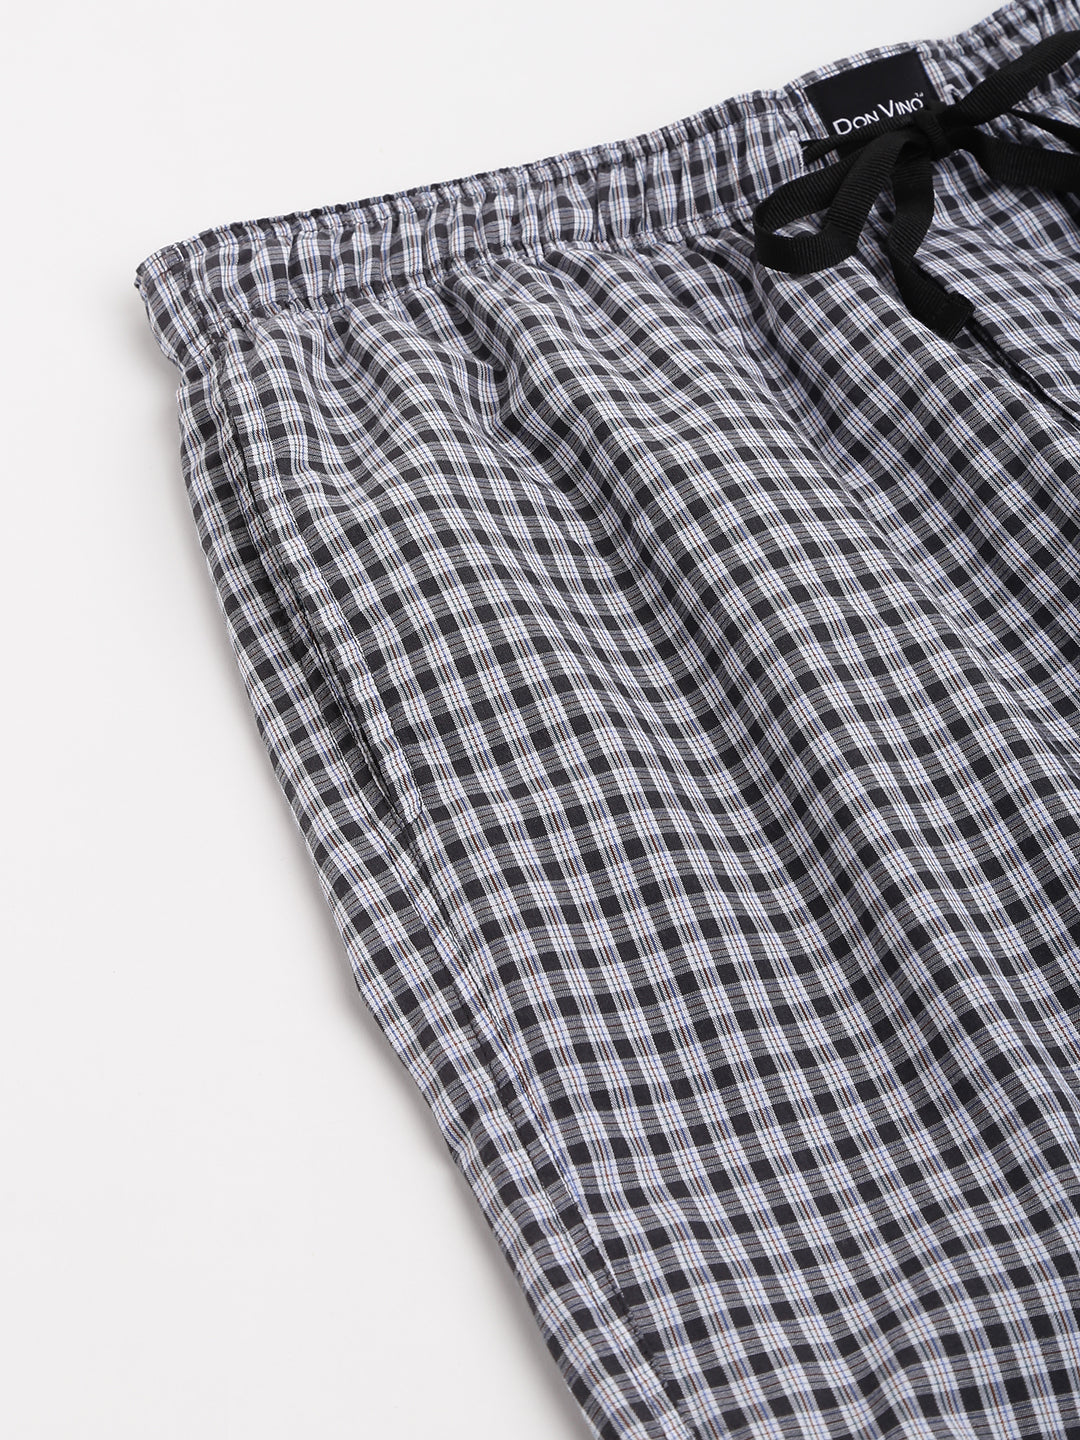 Don Vino Men's Checks Black & White Cotton Blend Lounge Pants